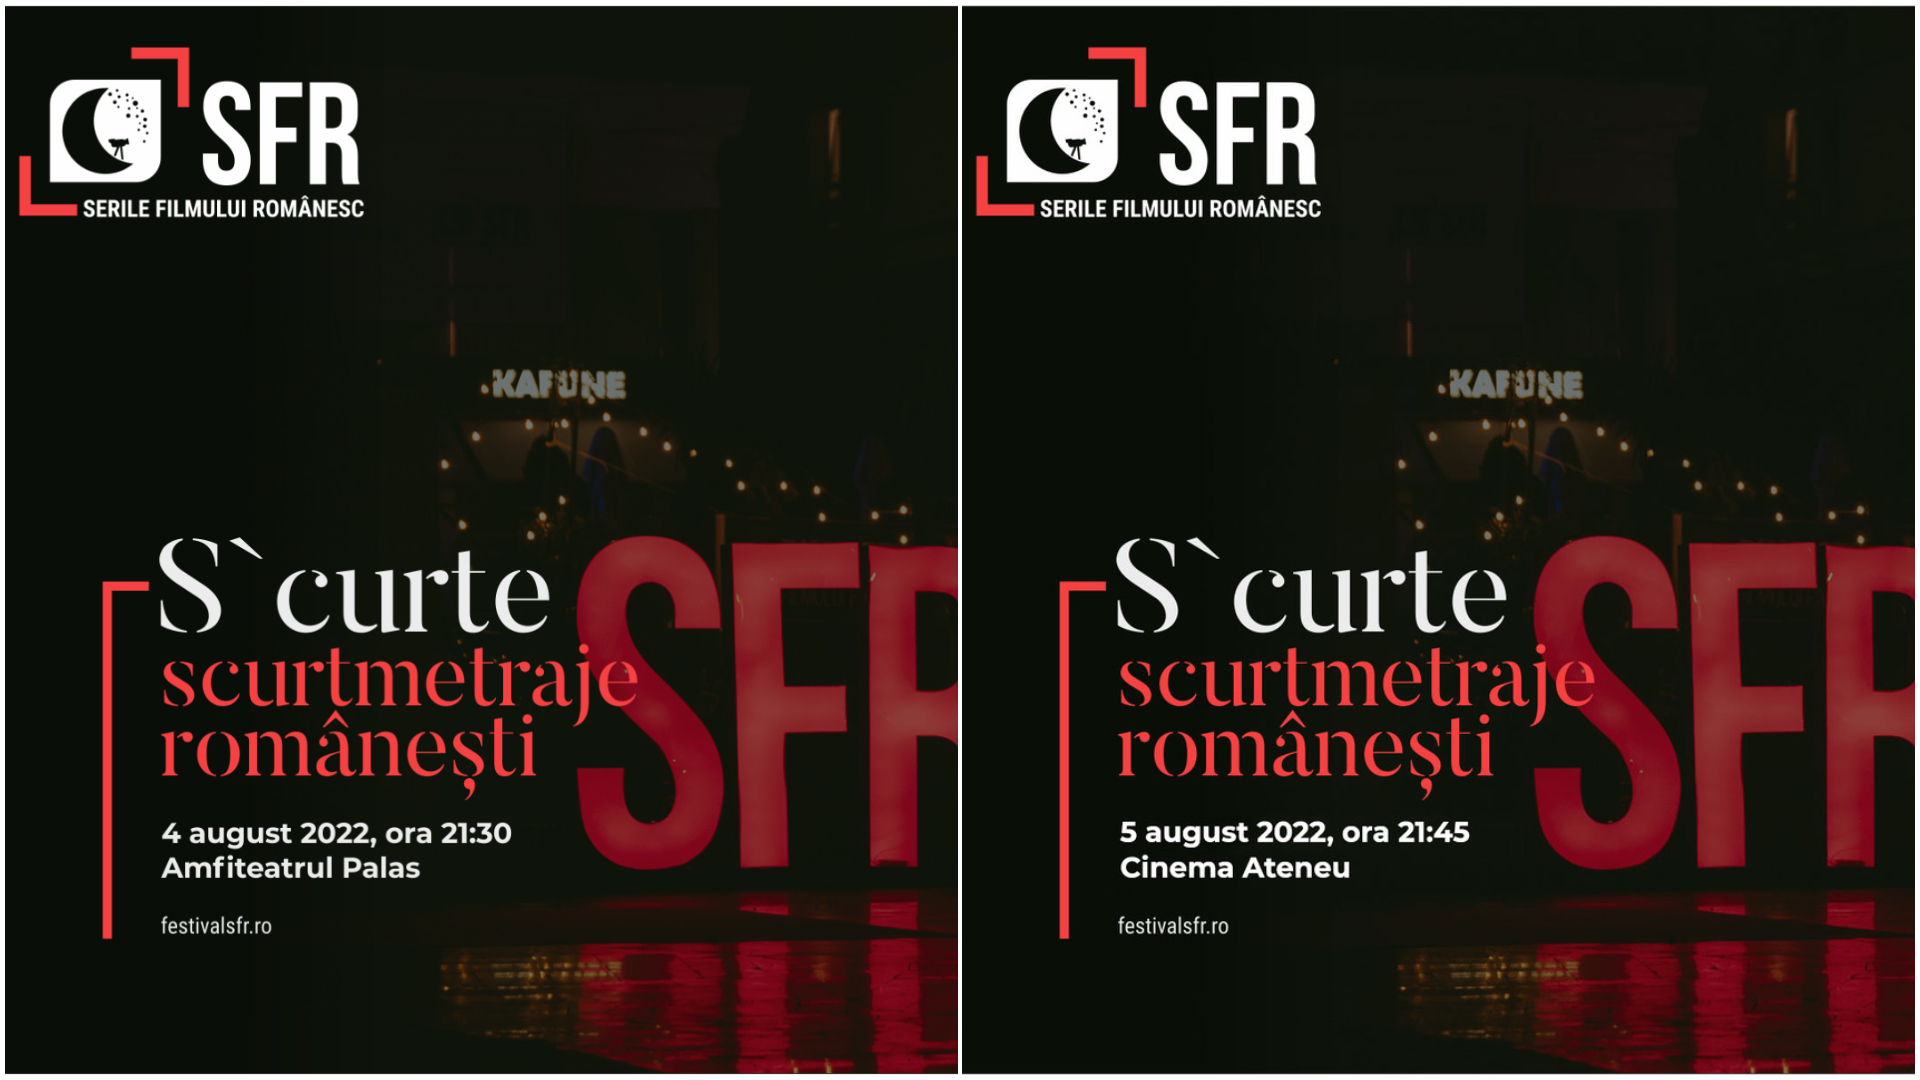 Ρουμανικές βραδιές κινηματογράφου 2022, 13η έκδοση S’Curte στο SFR, μαραθώνιος ταινιών μικρού μήκους στο Ιάσιο στις 4 και 5 Αυγούστου